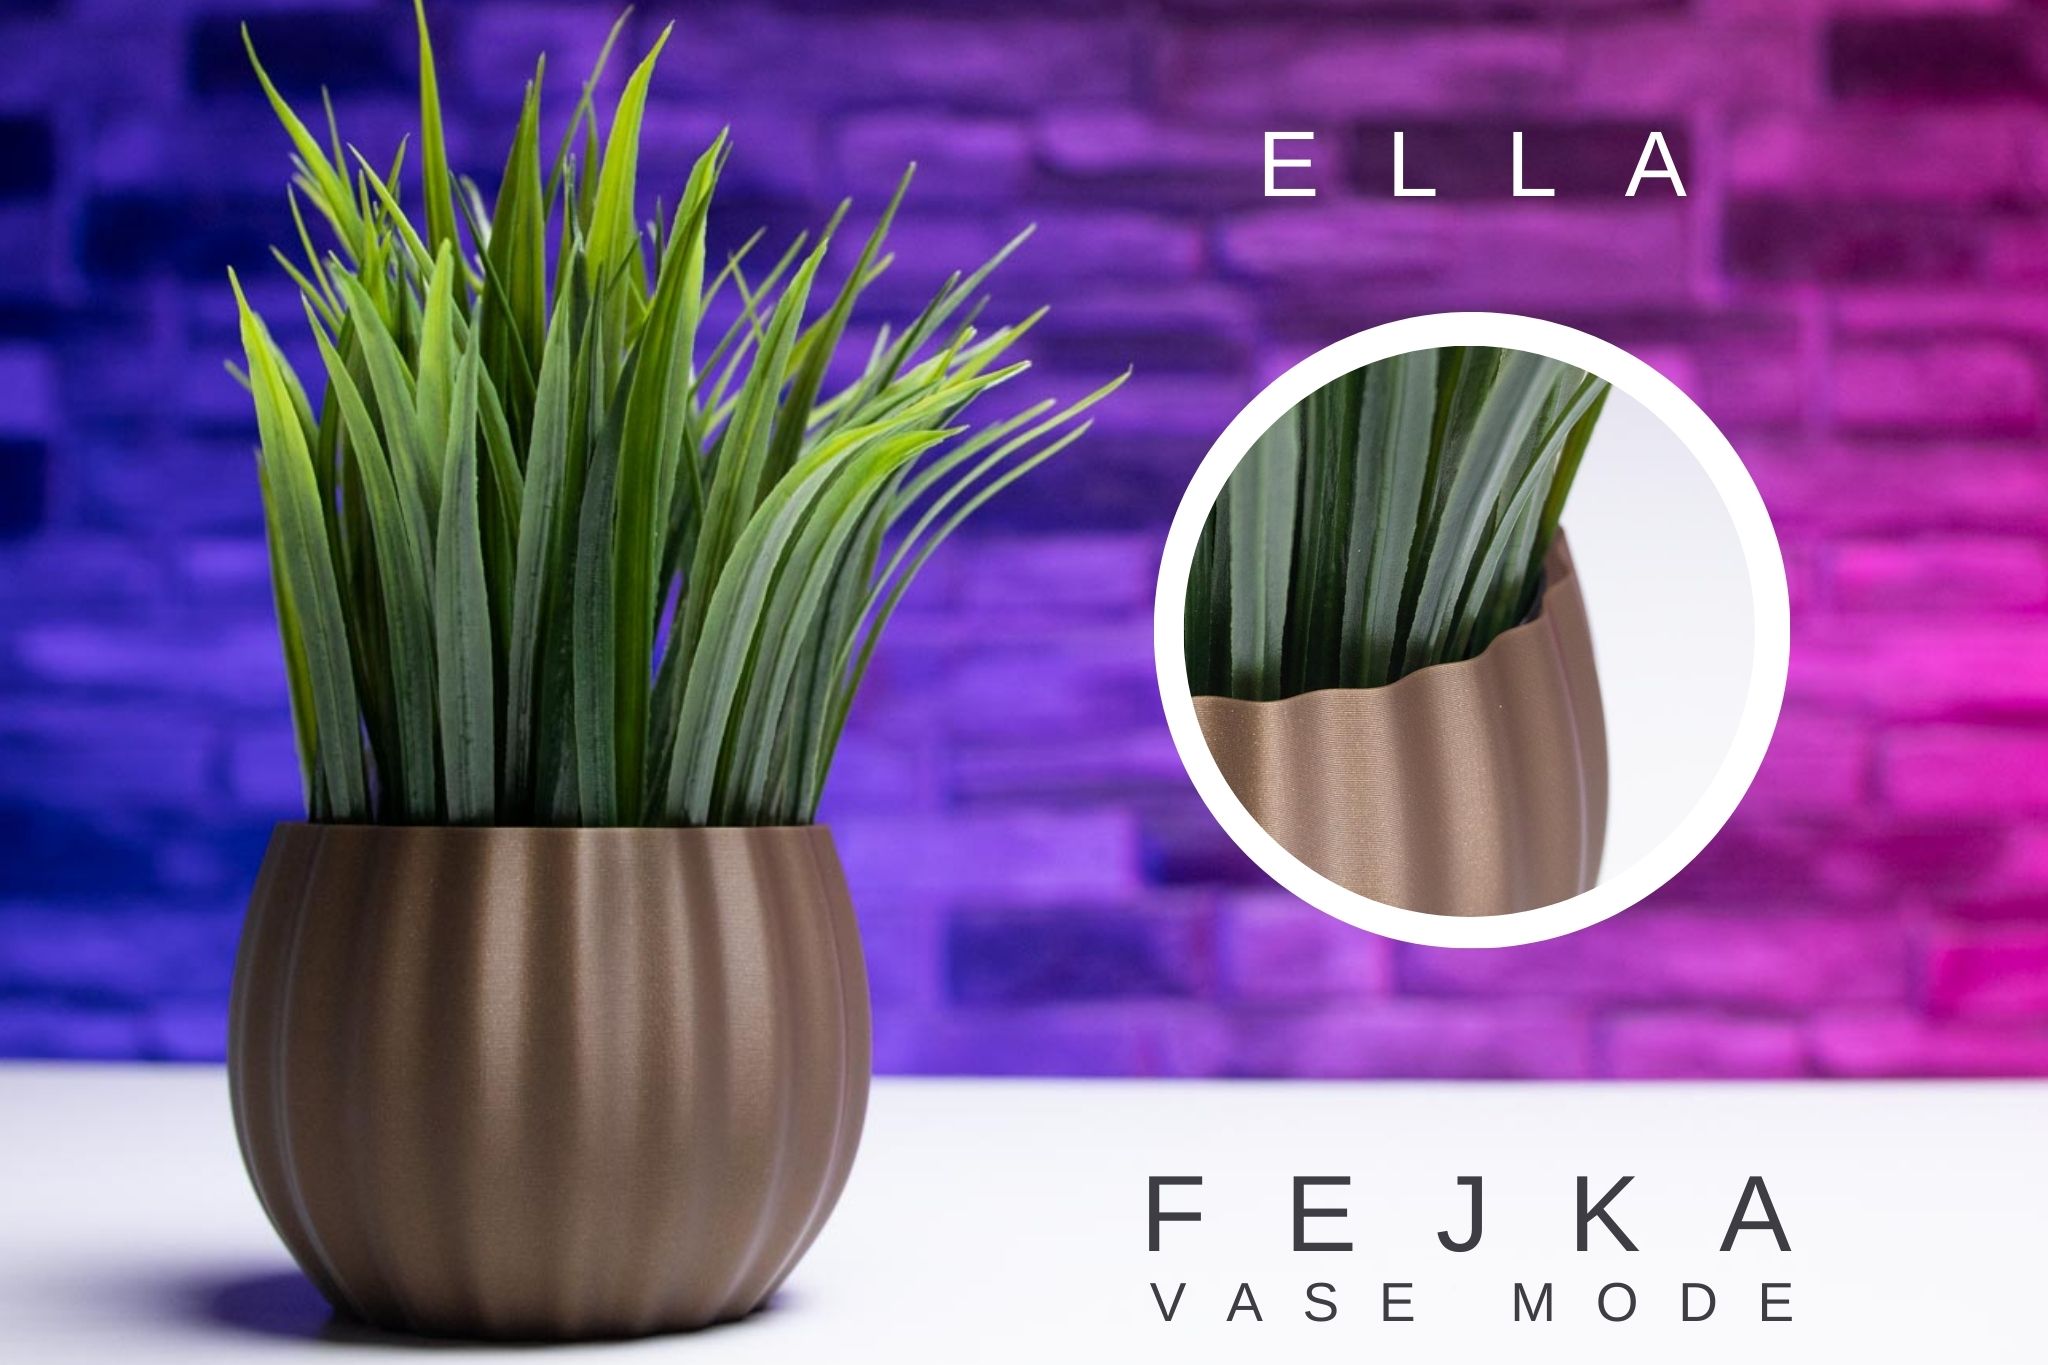 3D Printed Planter and Pot for Ikea Fejka - Vase ELLA